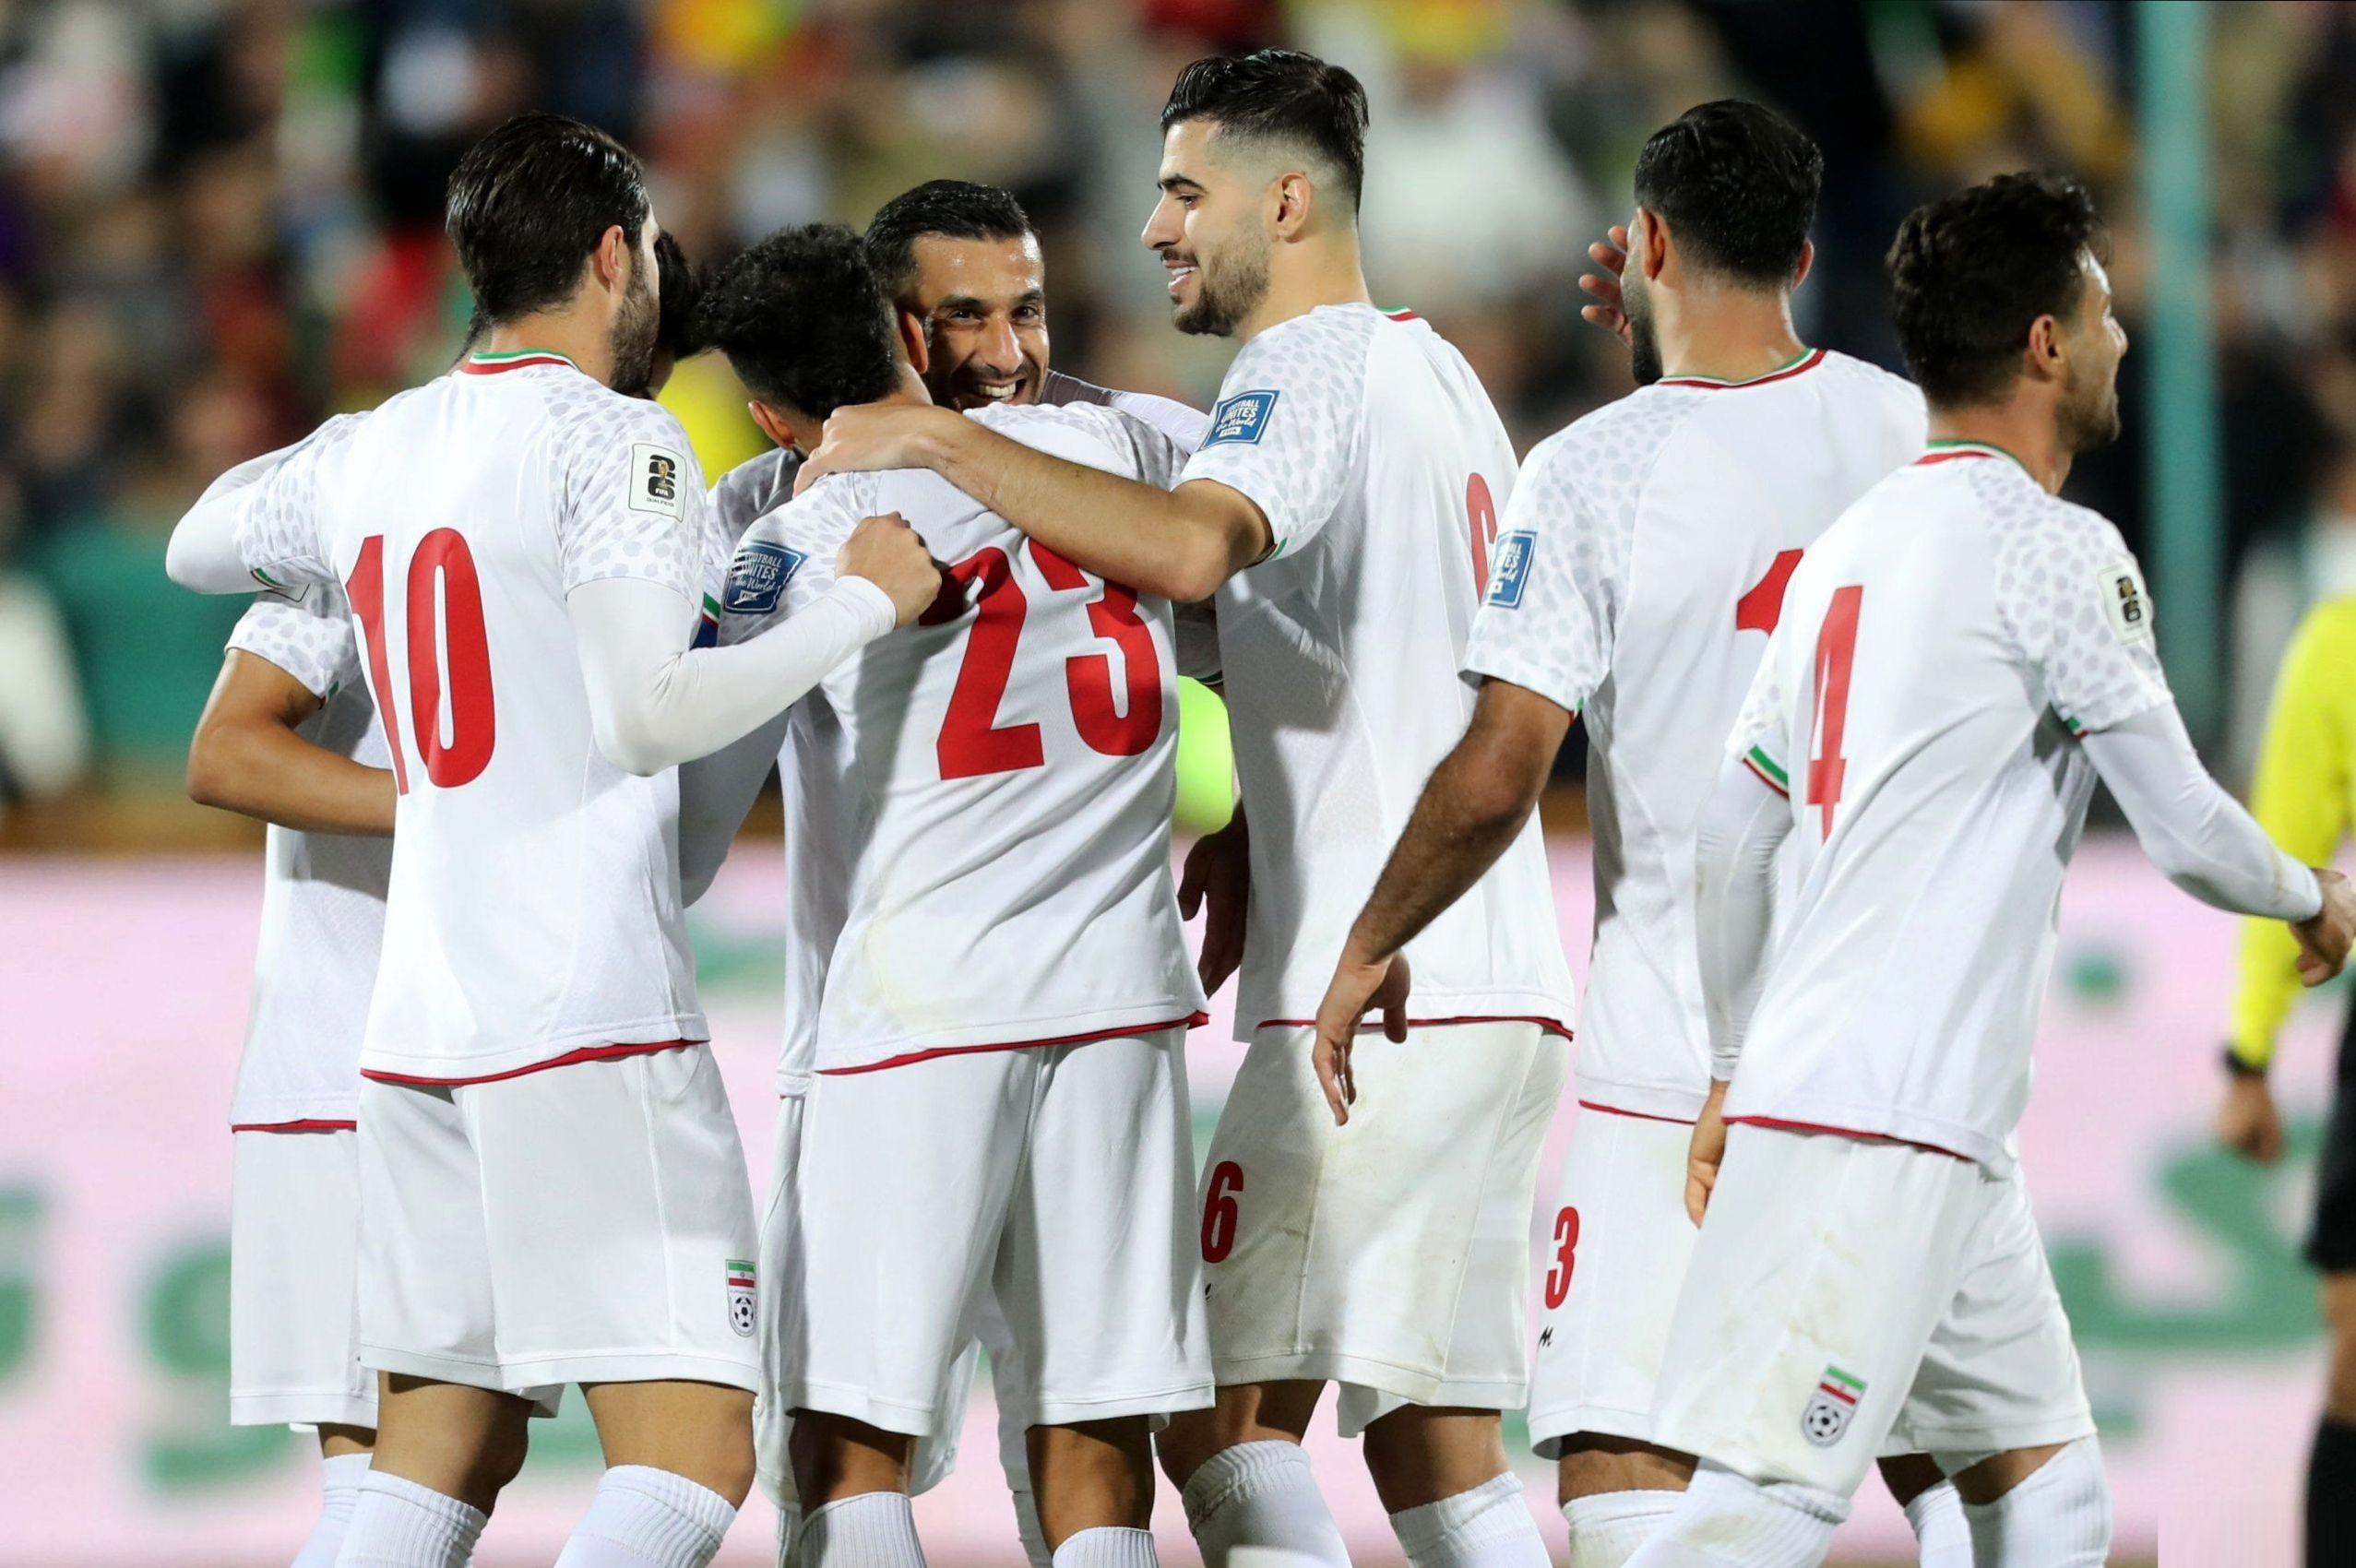 بازگشت حسینی و رضاییان به بازی اول جام ملت های آسیا